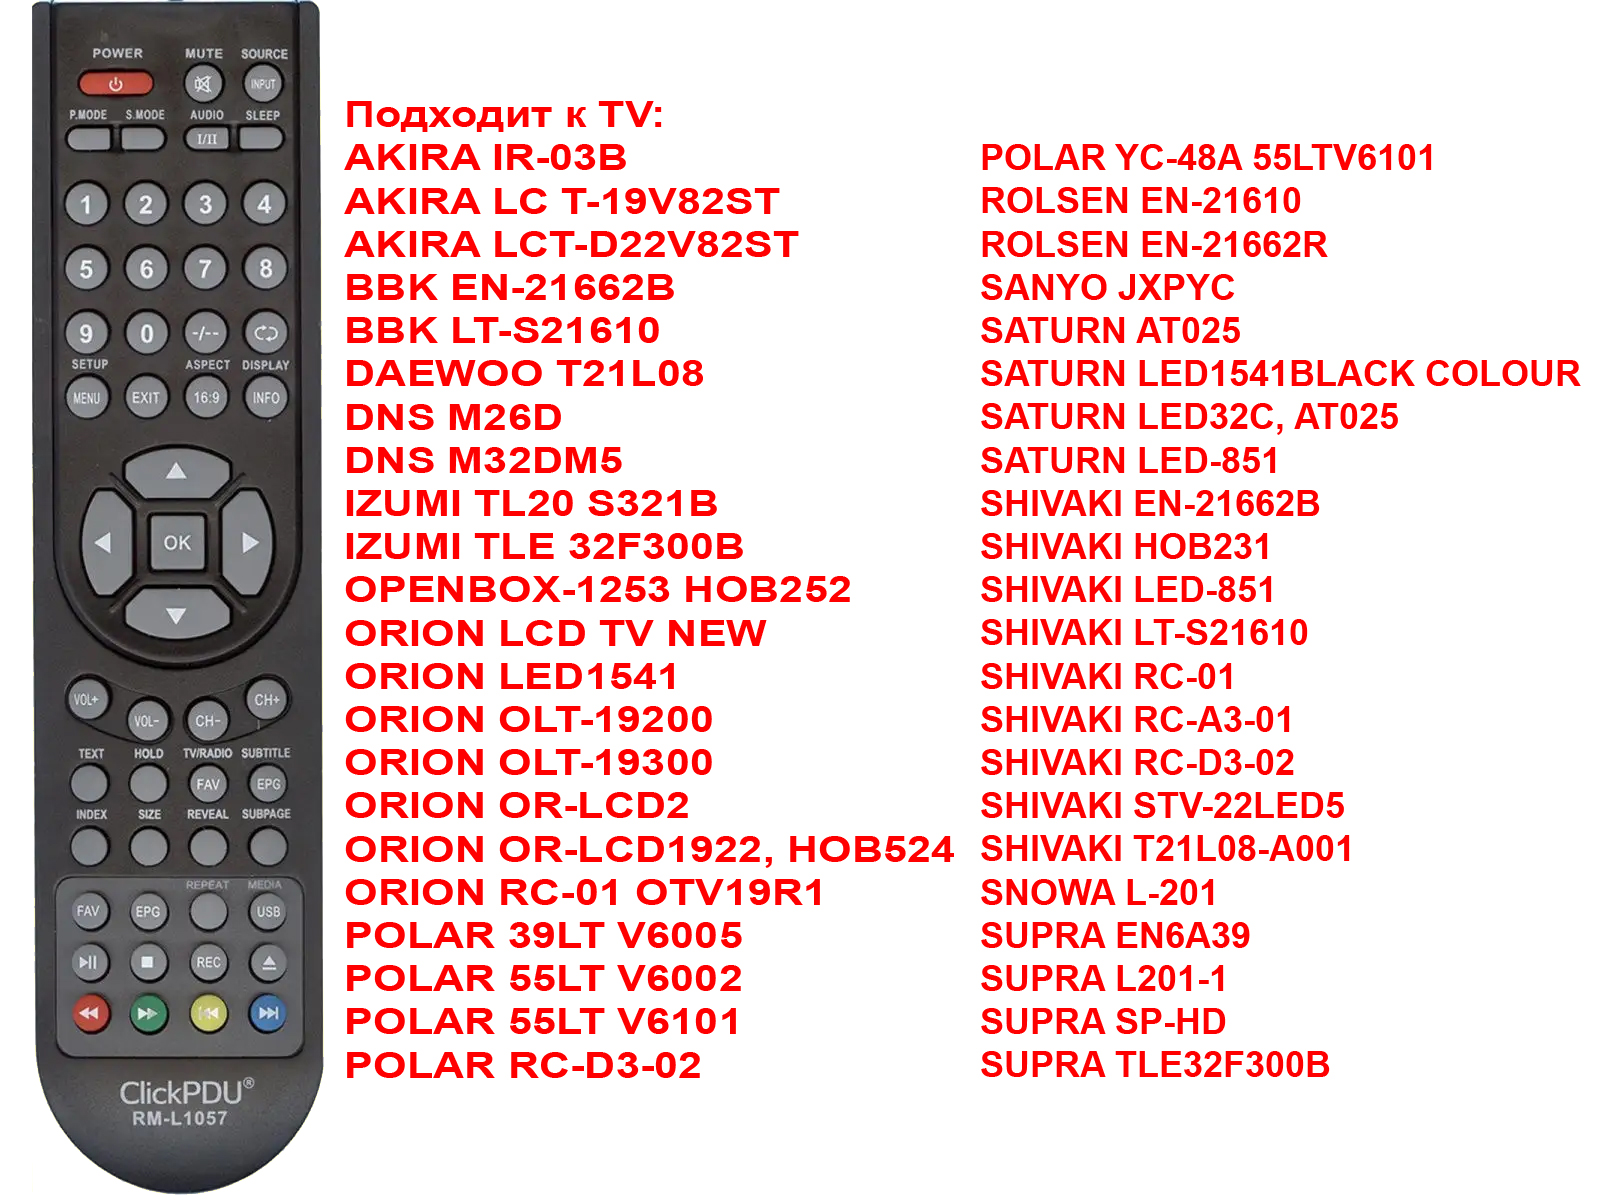   TV  RM-L1057   44  TV.    POWER       . AKIRA IR-03B AKIRA LC T-19V82ST AKIRA LCT-D22V82ST BBK EN-21662B BBK LT-S21610 DAEWOO T21L08 DNS M26D DNS M32DM5 IZUMI TL20 S321B IZUMI TLE 32F300B OPENBOX-1253 HOB252 ORION LCD TV NEW ORION LED1541 ORION OLT-19200 ORION OLT-19300 ORION OR-LCD2 ORION OR-LCD1922, HOB524 ORION RC-01 OTV19R1 POLAR 39LT V6005 POLAR 55LT V6002 POLAR 55LT V6101 POLAR RC-D3-02 POLAR YC-48A 55LTV6101 ROLSEN EN-21610 ROLSEN EN-21662R SANYO JXPYC SATURN AT025 SATURN LED1541BLACK COLOUR SATURN LED32C, AT025 SATURN LED-851 SHIVAKI EN-21662B SHIVAKI HOB231 SHIVAKI LED-851 SHIVAKI LT-S21610 SHIVAKI RC-01 SHIVAKI RC-A3-01 SHIVAKI RC-D3-02 SHIVAKI STV-22LED5 SHIVAKI T21L08-A001 SNOWA L-201 SUPRA EN6A39 SUPRA L201-1 SUPRA SP-HD SUPRA TLE32F300B